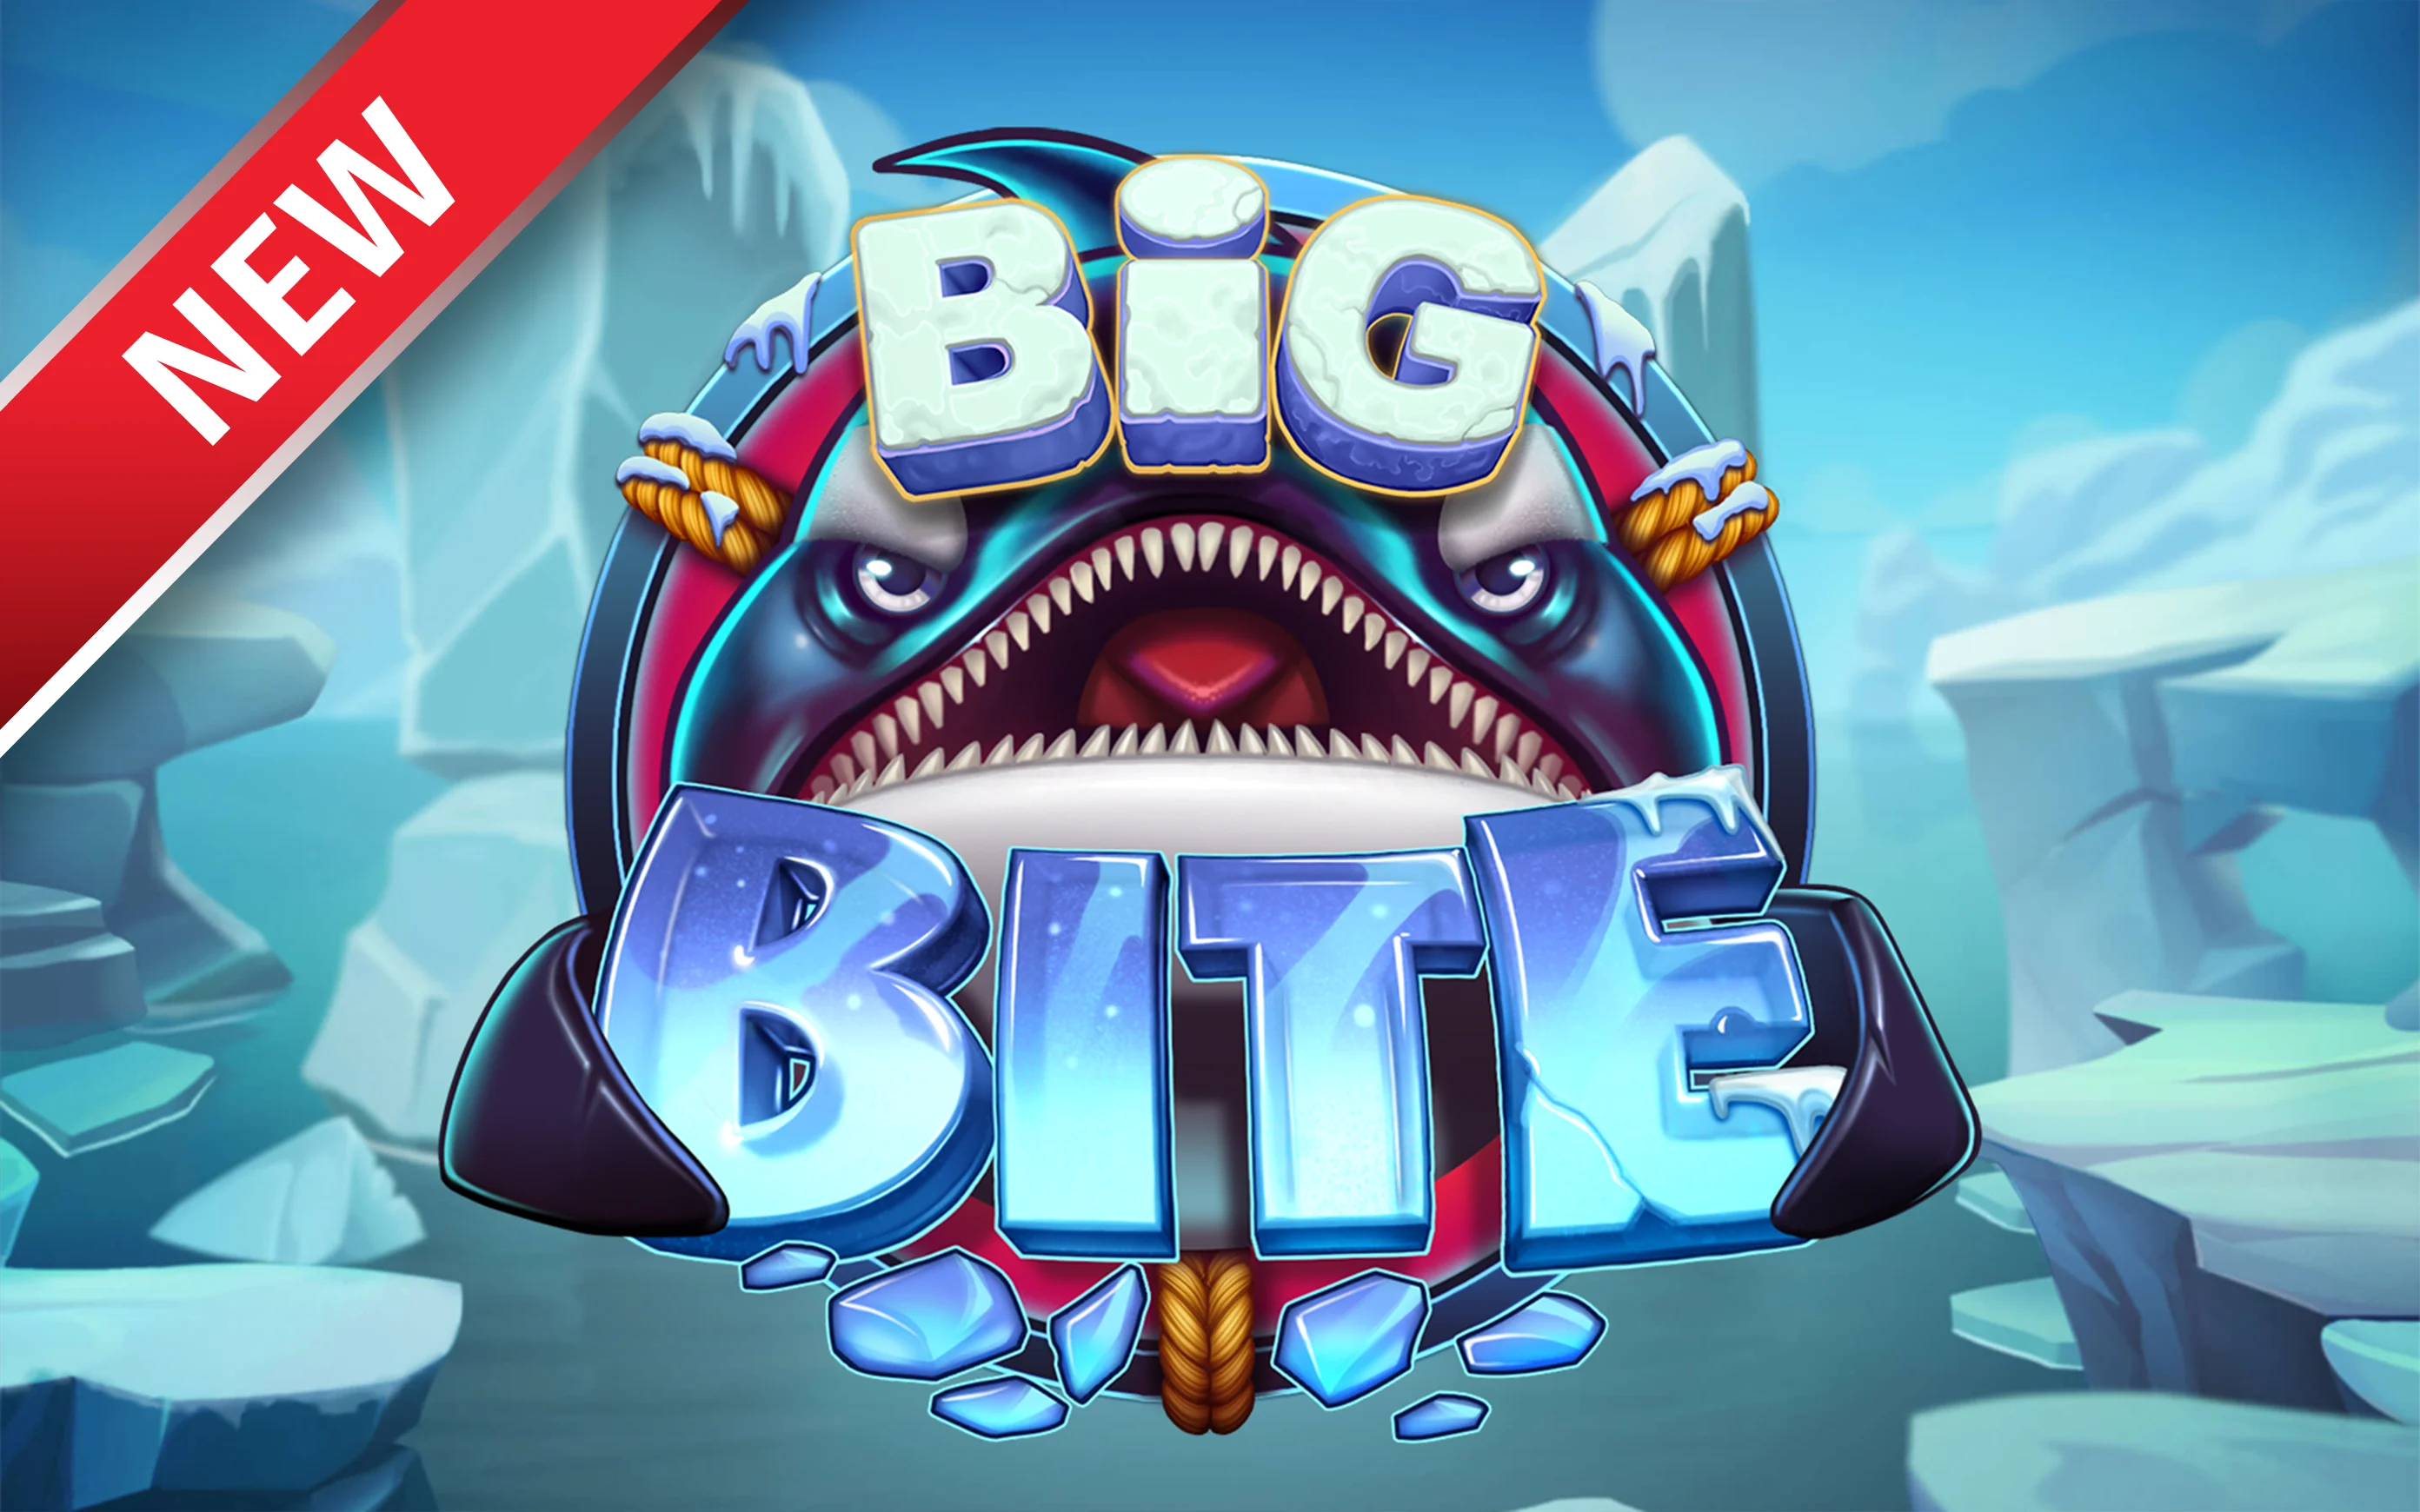 Play Big Bite on Starcasino.be online casino